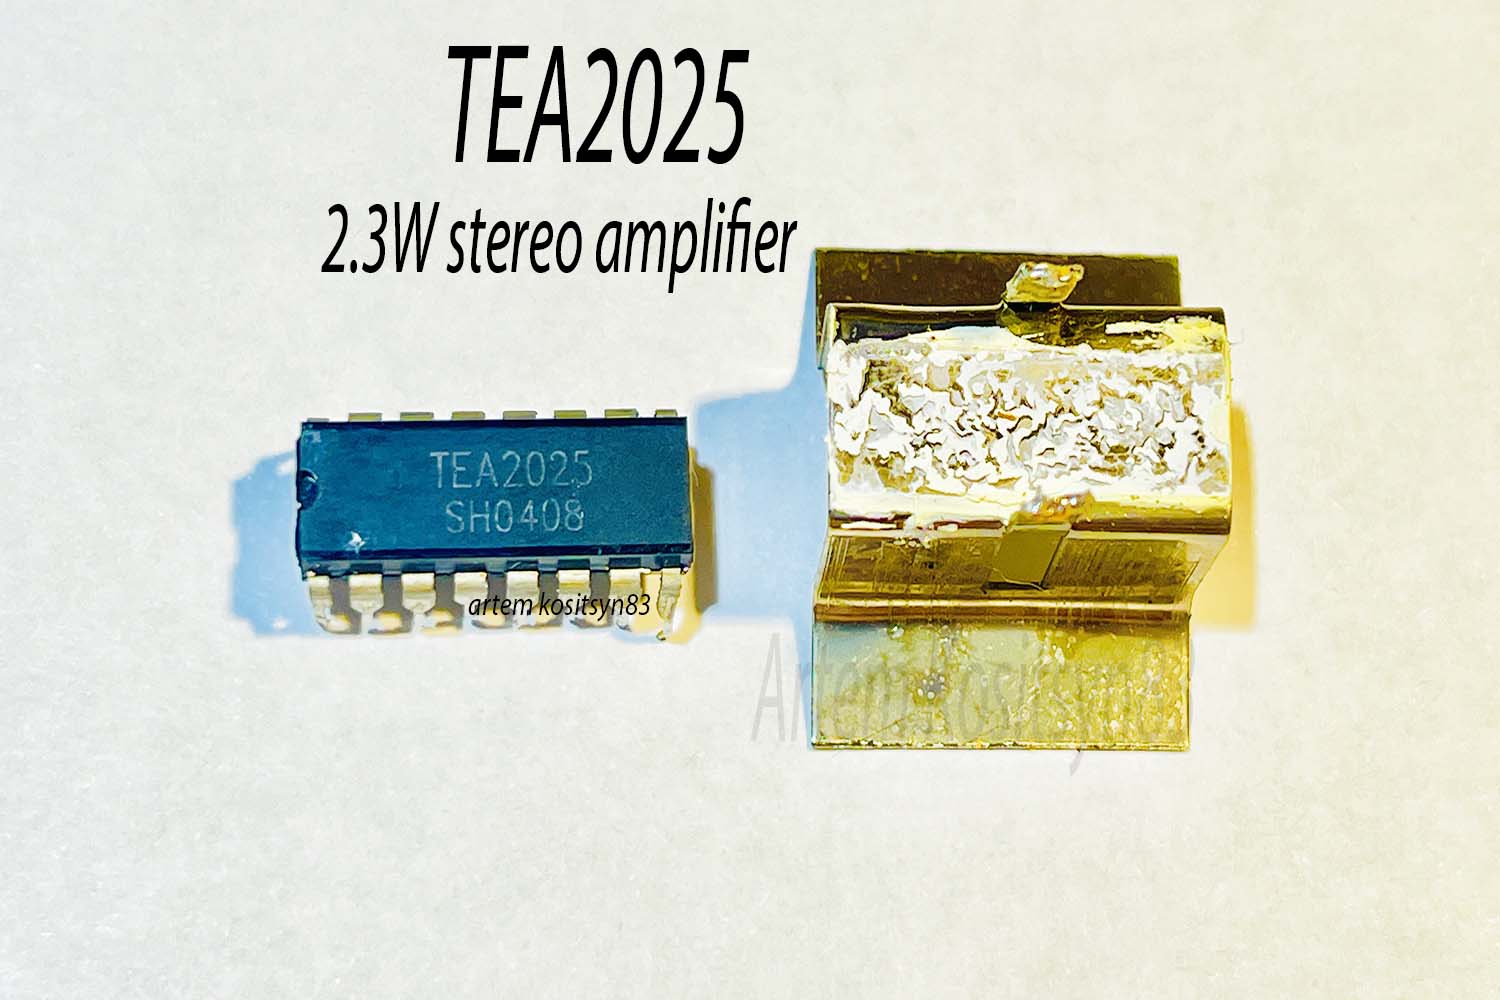 Подробнее о статье TEA2025.Stereo amplifier.Datasheet